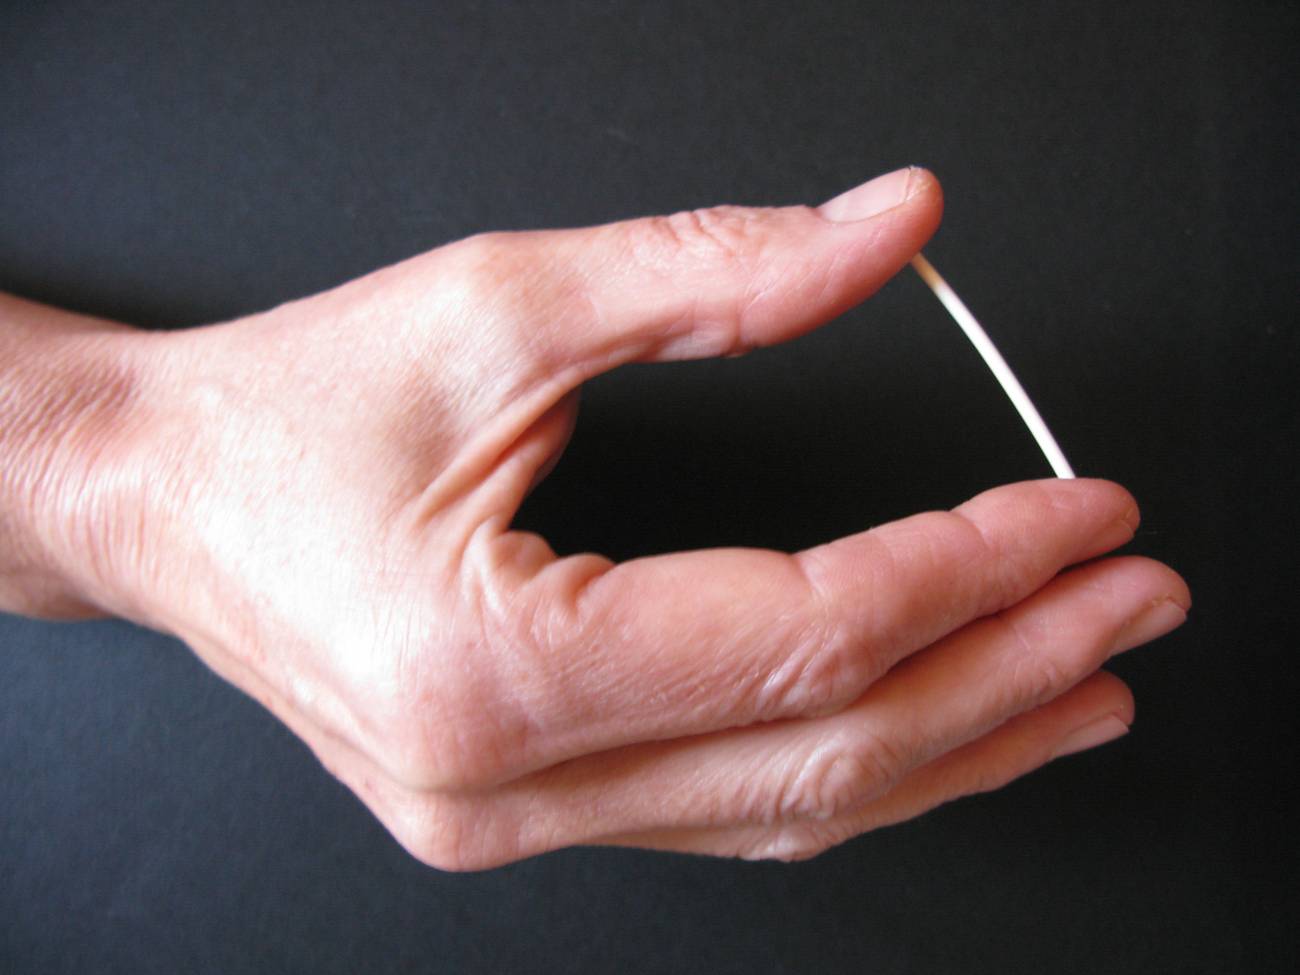 El implante subcutáneo de gestágeno es el método anticonceptivo más eficaz